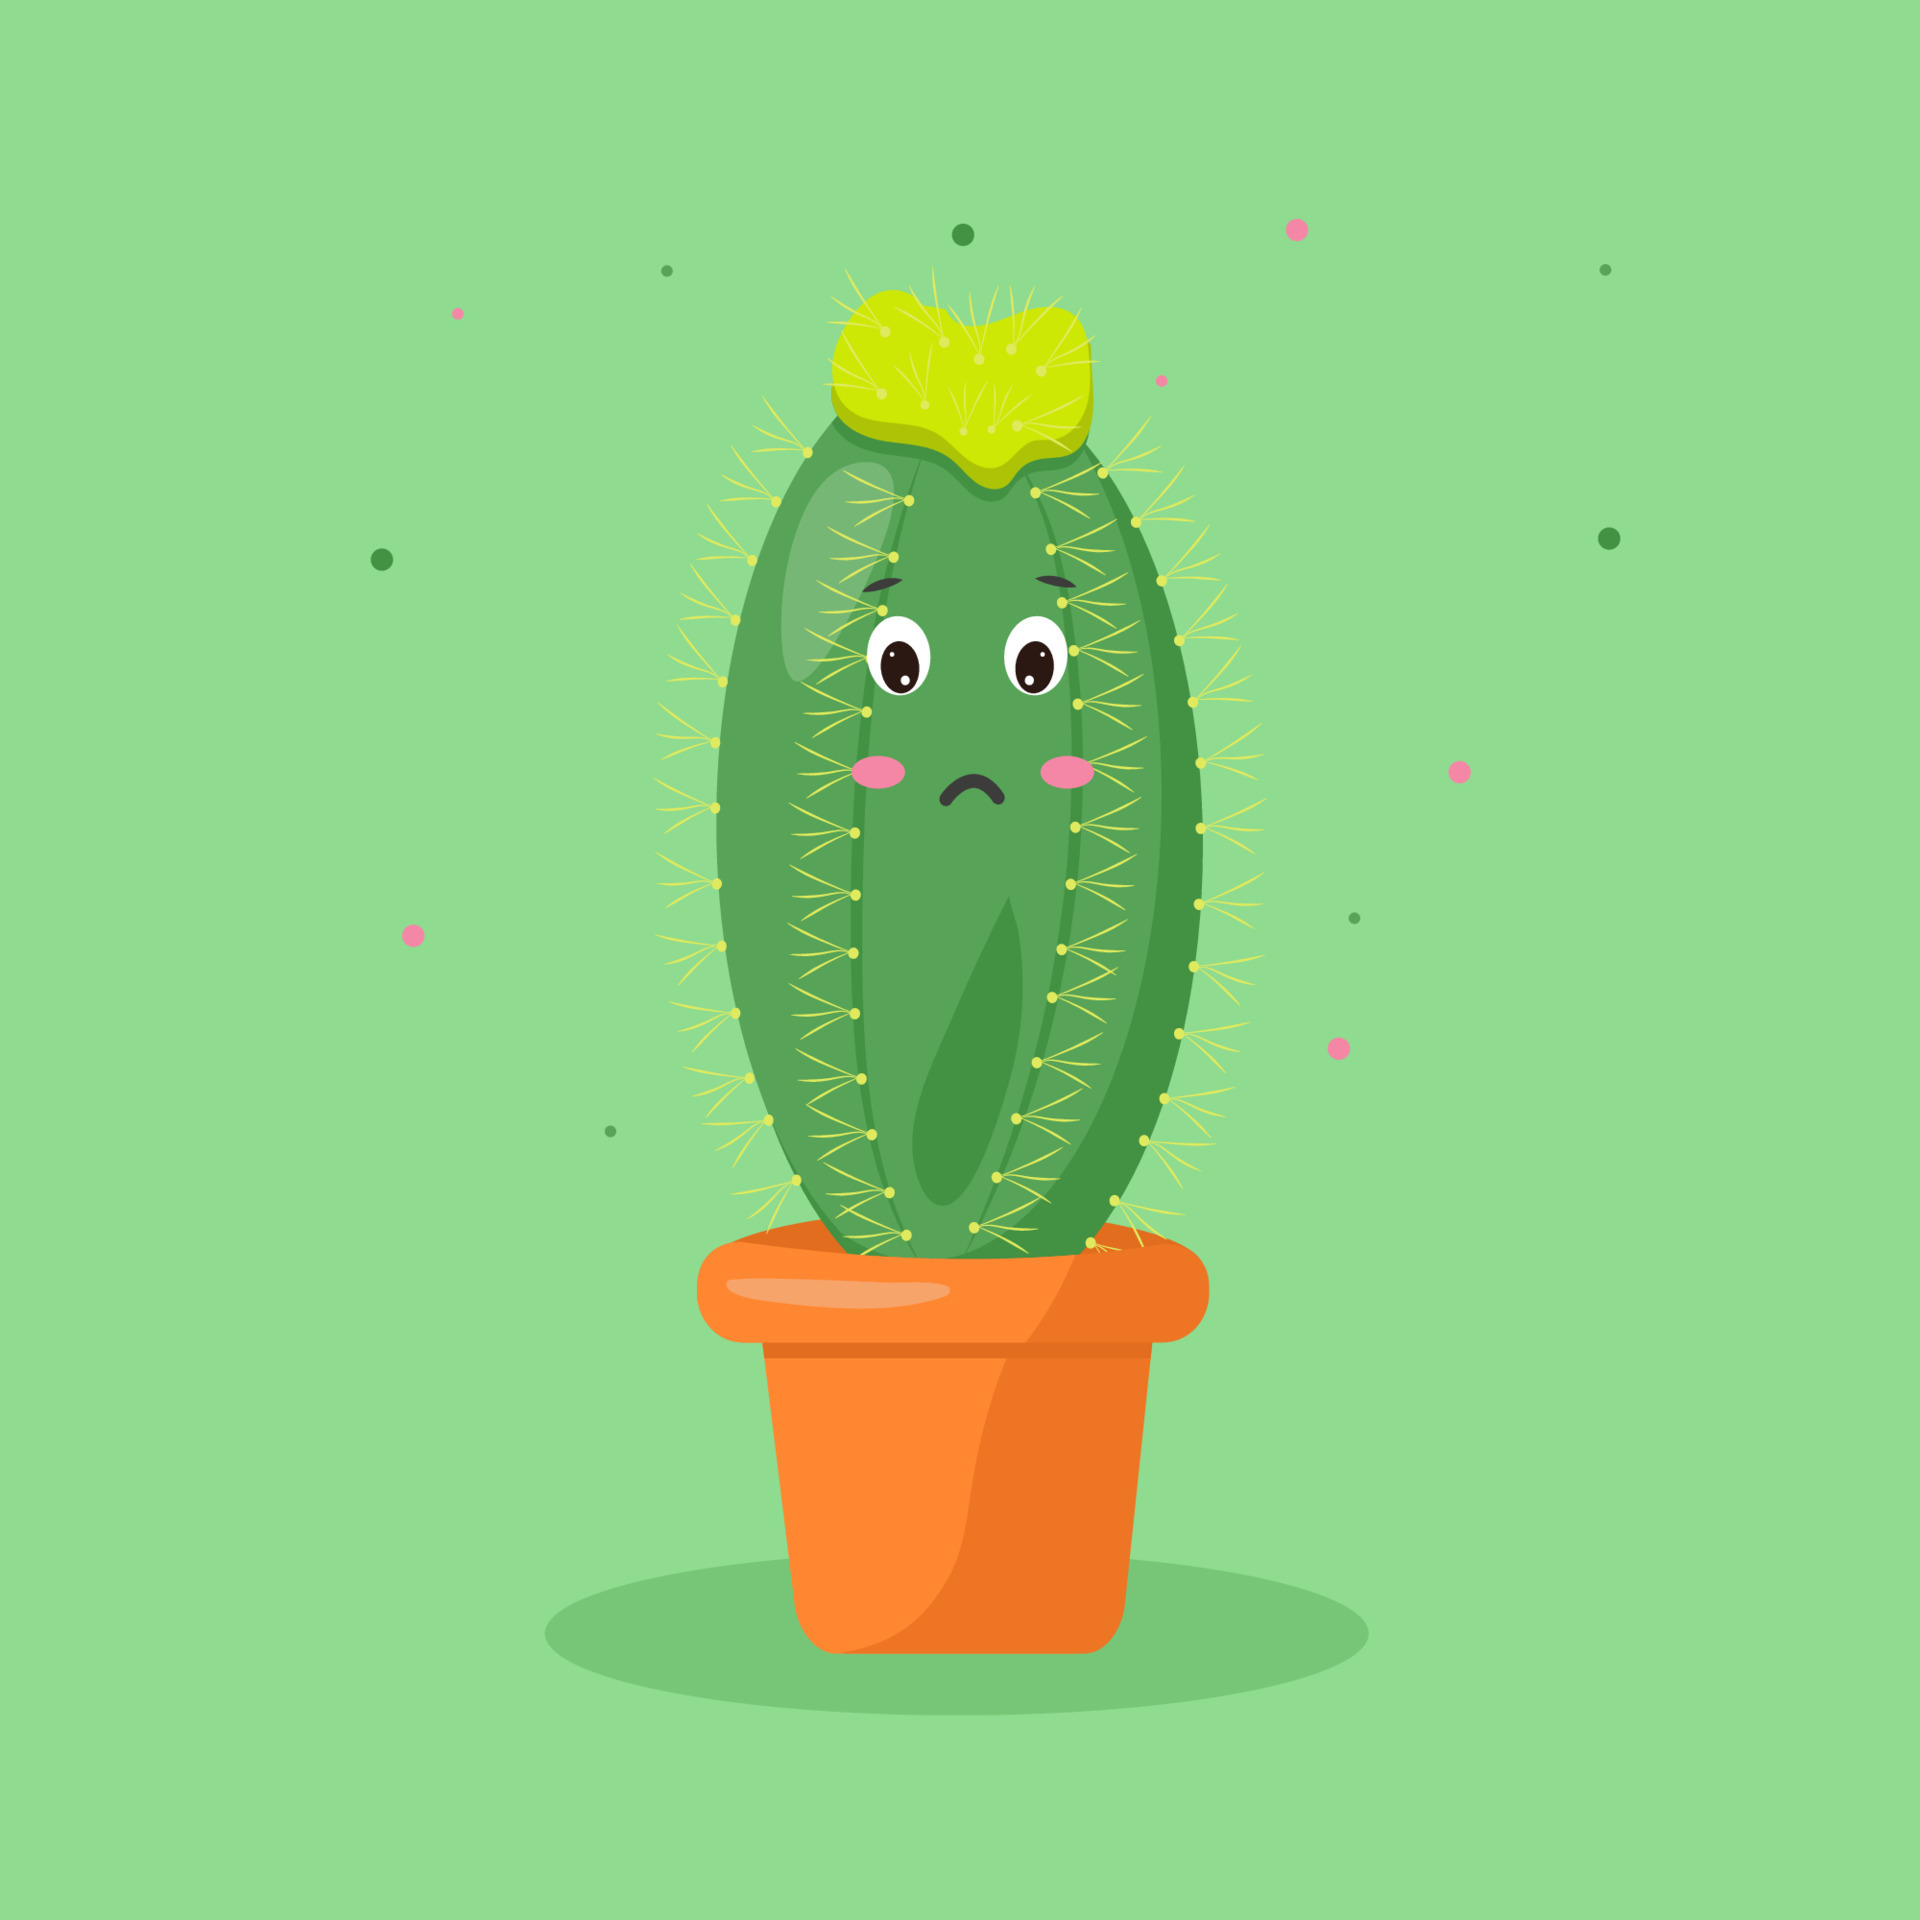 premier bioscoop Hesje tekenfilm grappig cactus in een pot emoties. illustratie met groen kawaii  cactus pot. symbool gezicht. 19040686 Vectorkunst bij Vecteezy